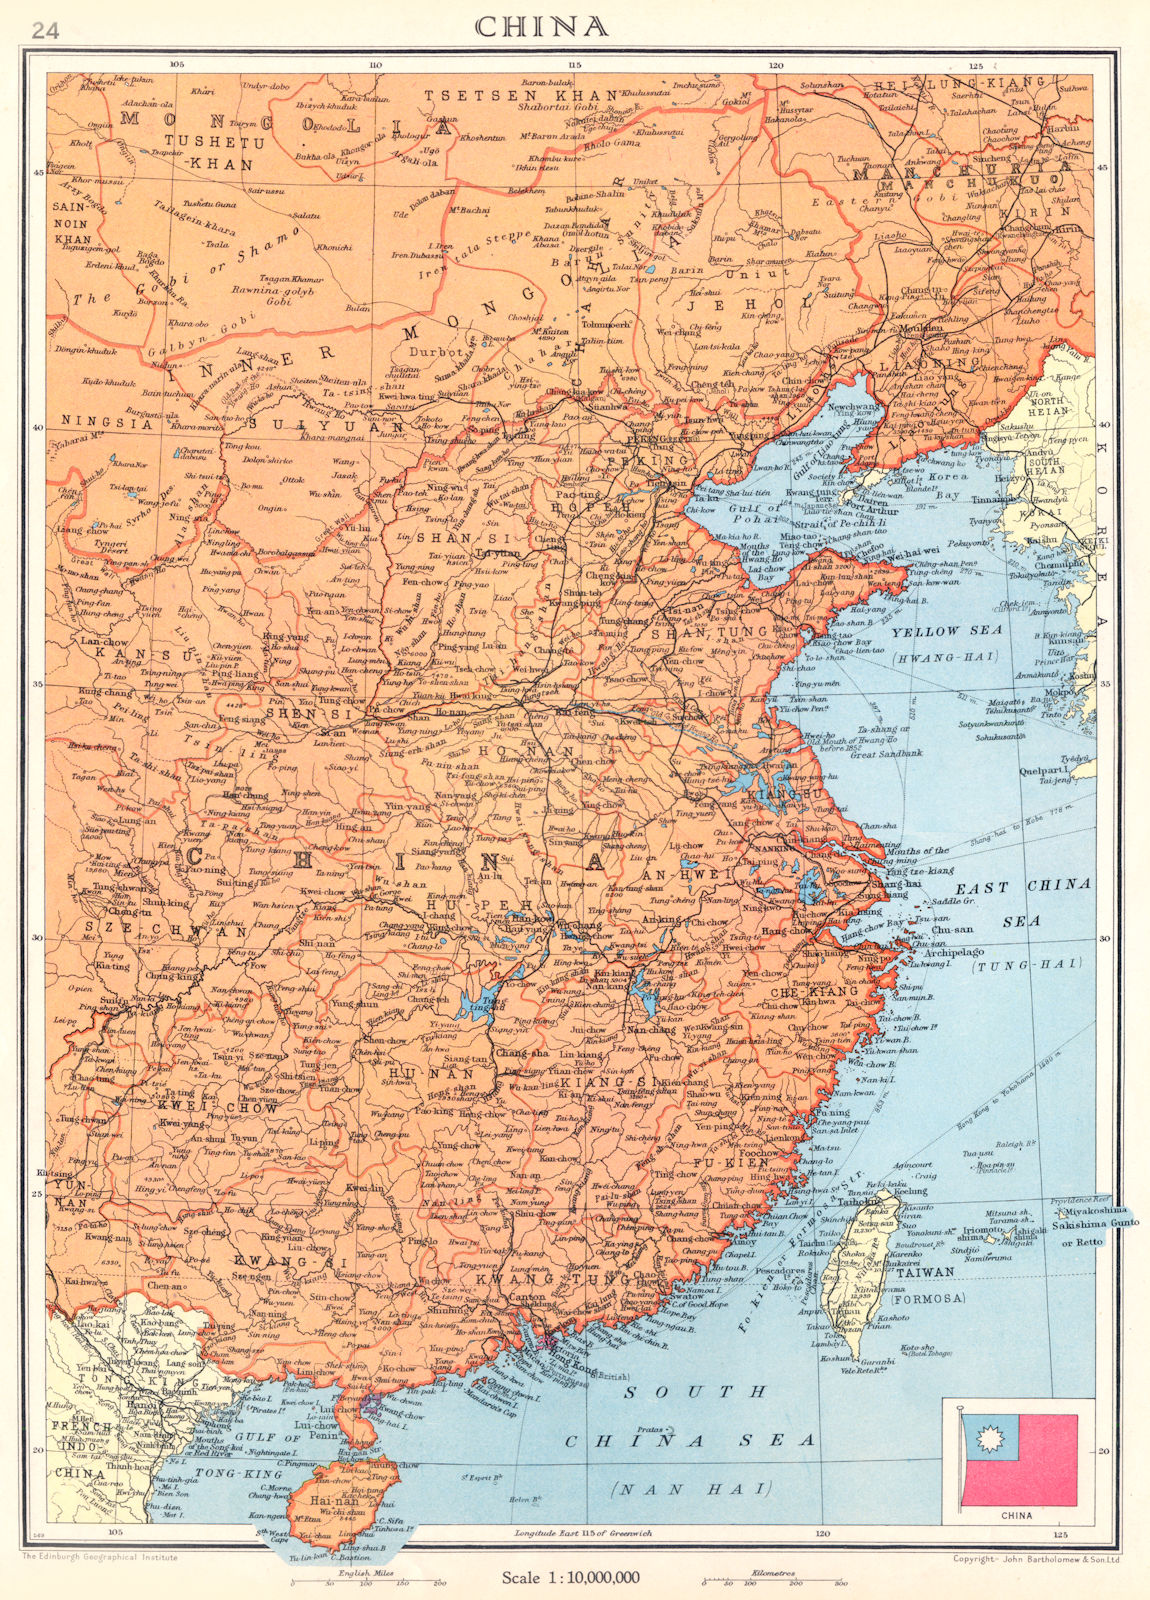 CHINA. Kwang-chow Taiwan Hong Kong 1938 old vintage map plan chart